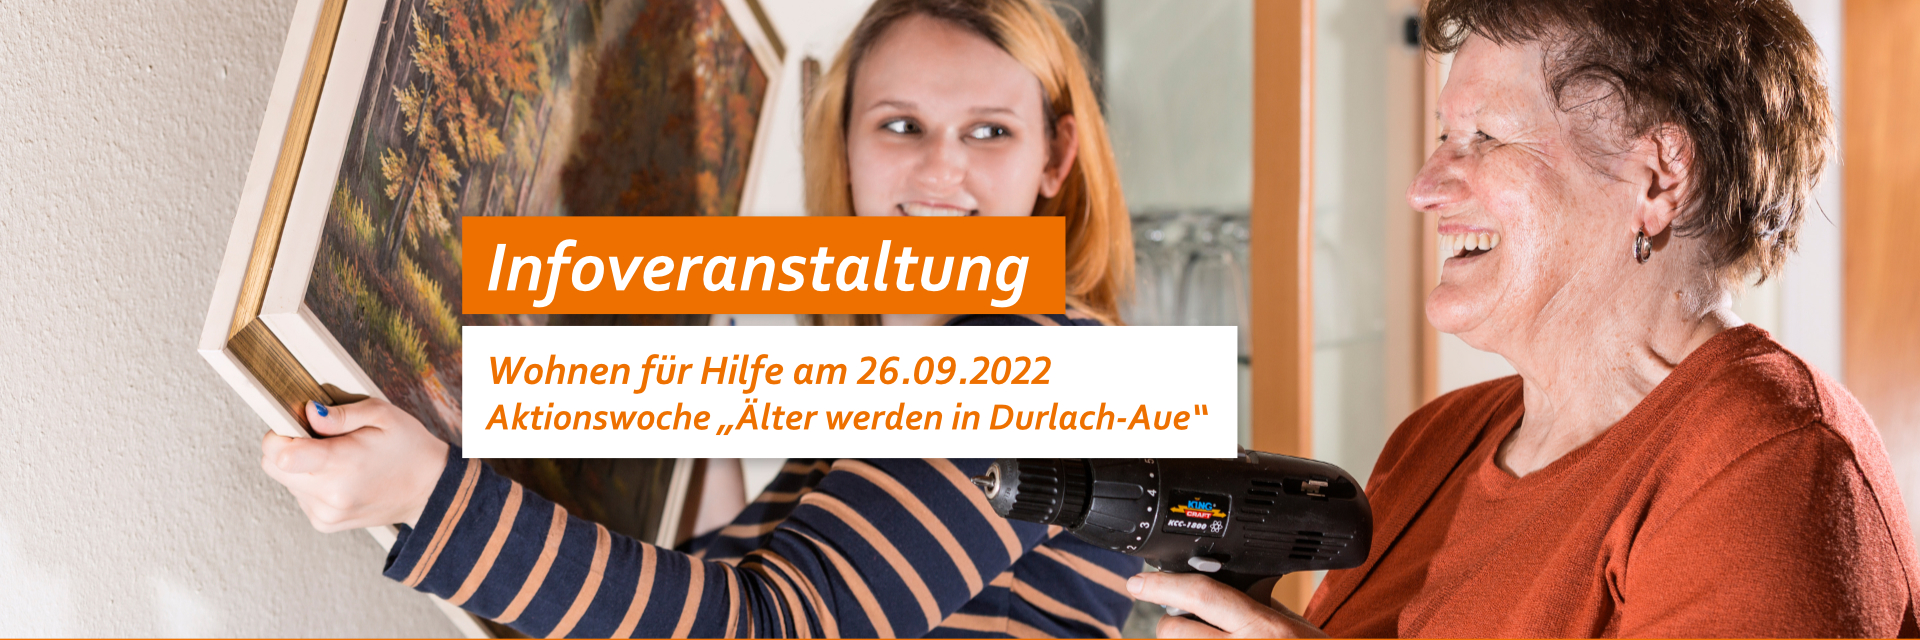 Infoveranstaltung Wohnen für Hilfe am 26.09.2022 zur Aktionswoche "Älter werden in Durlach-Aue"